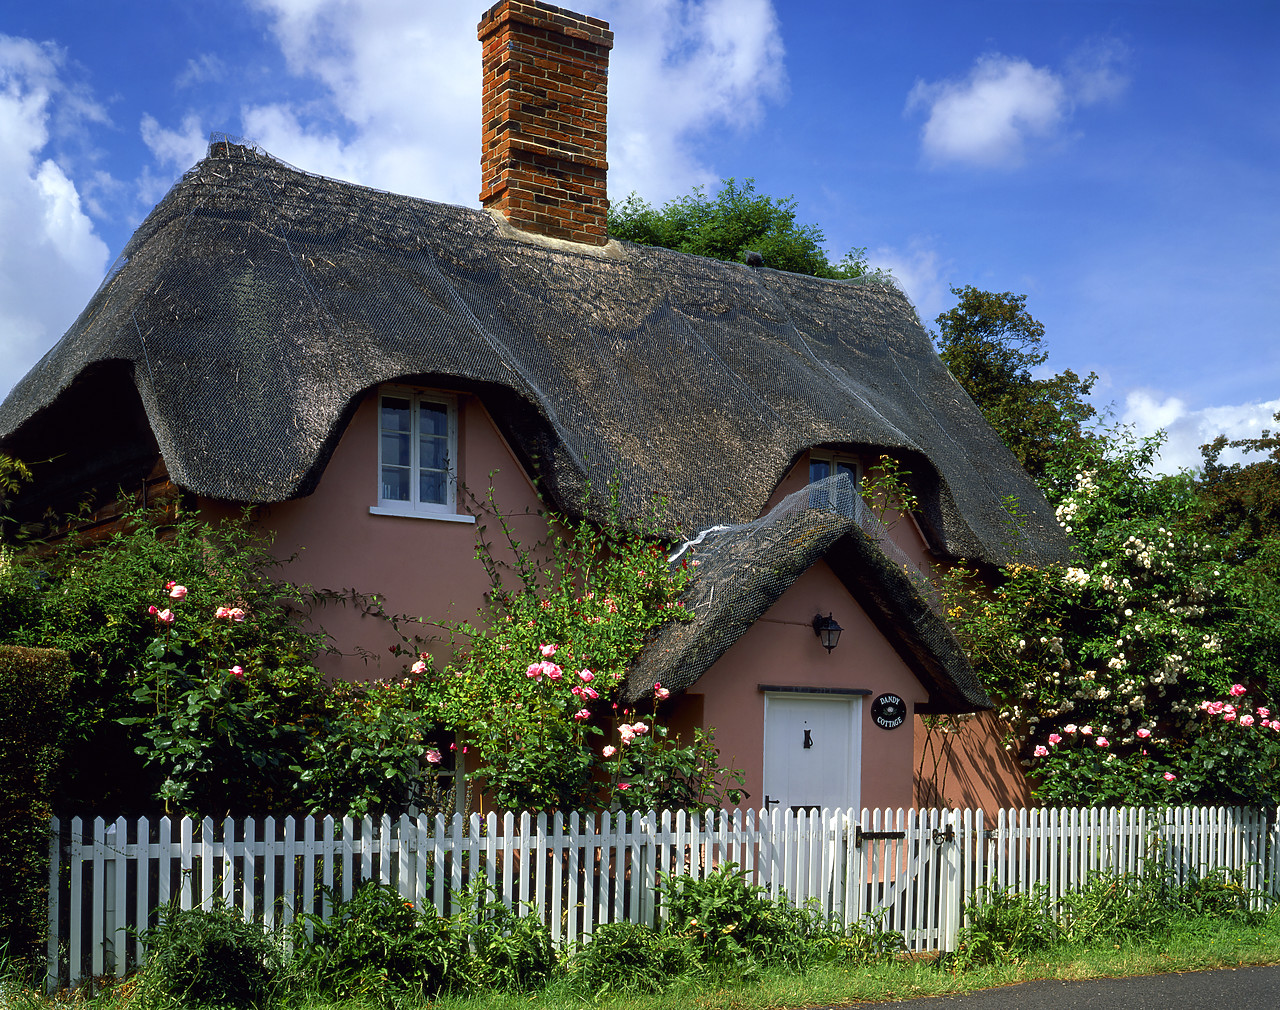 #040150-1 - Thatched Cottage, Lavenham, Suffolk, England